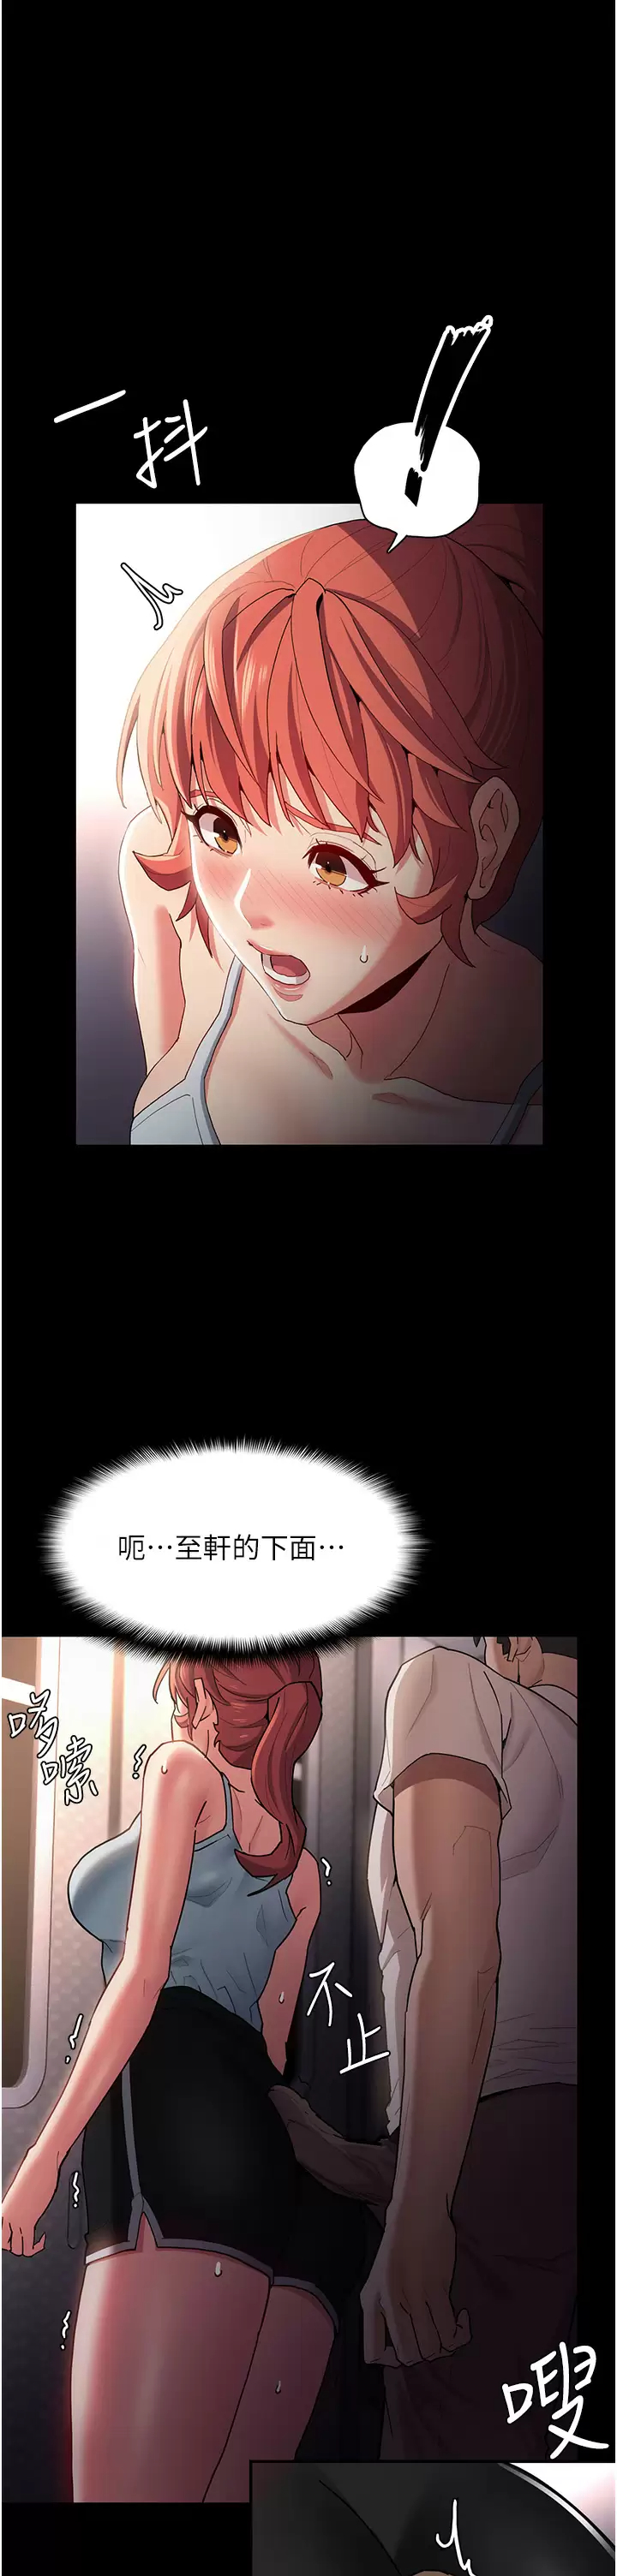 韩国污漫画 癡漢成癮 第15话 自投罗网的卉妮 30